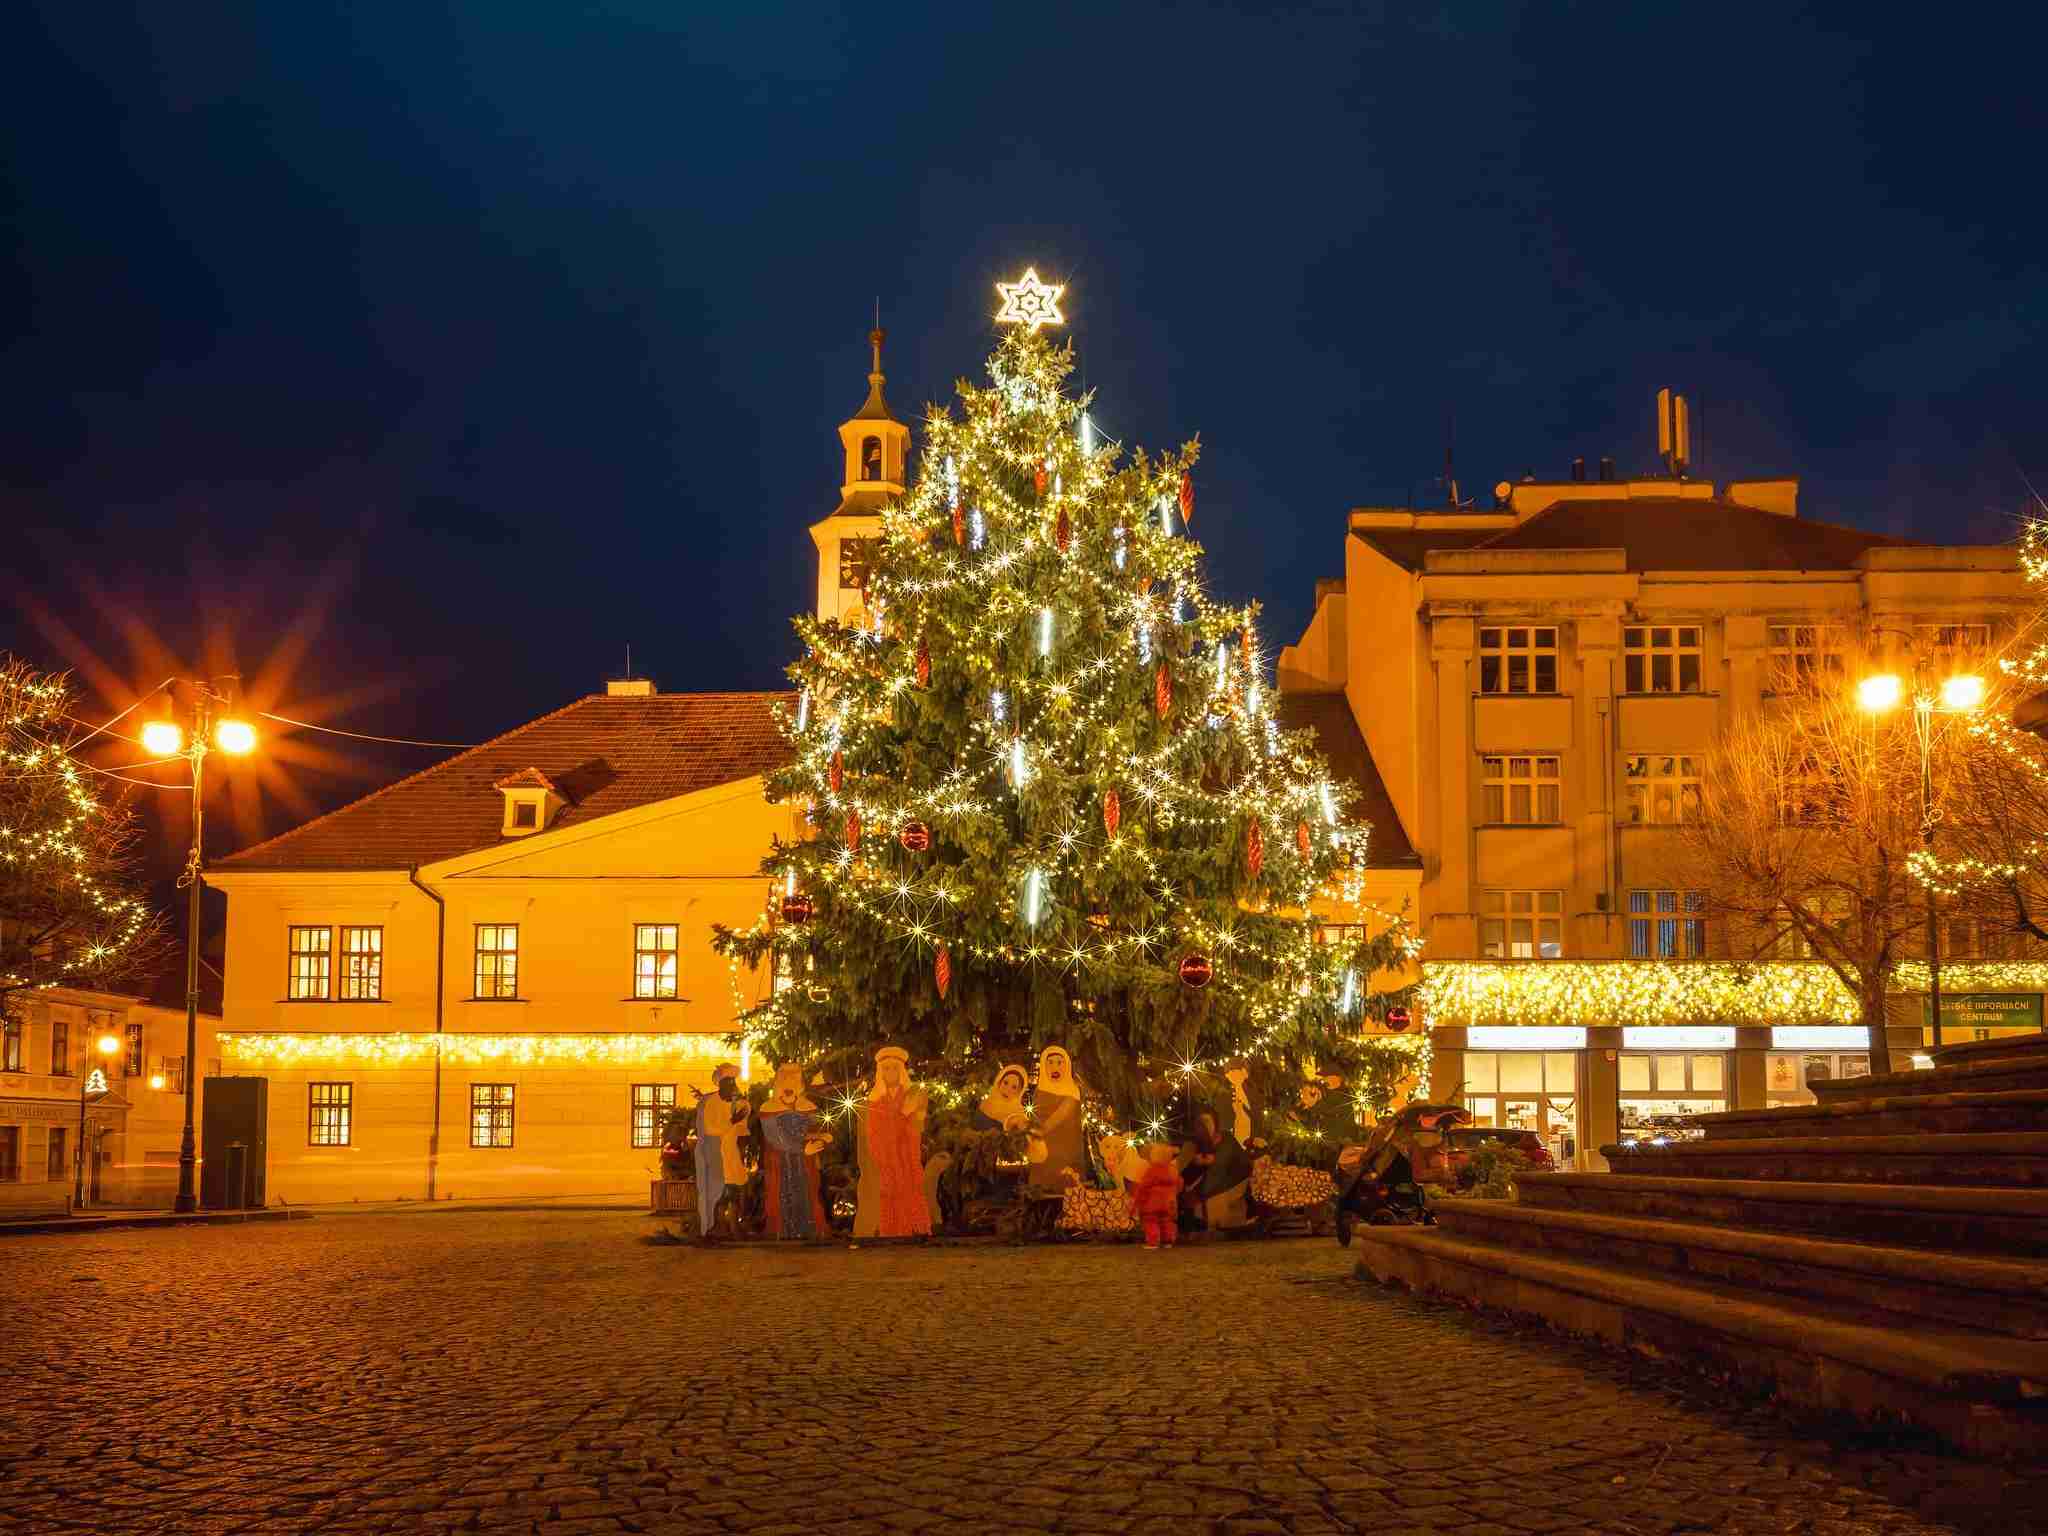 Rozsvícení vánočního stromu v Lounech bude v neděli 27. listopadu. Na programu jsou dětská vystoupení a projevy představitelů města